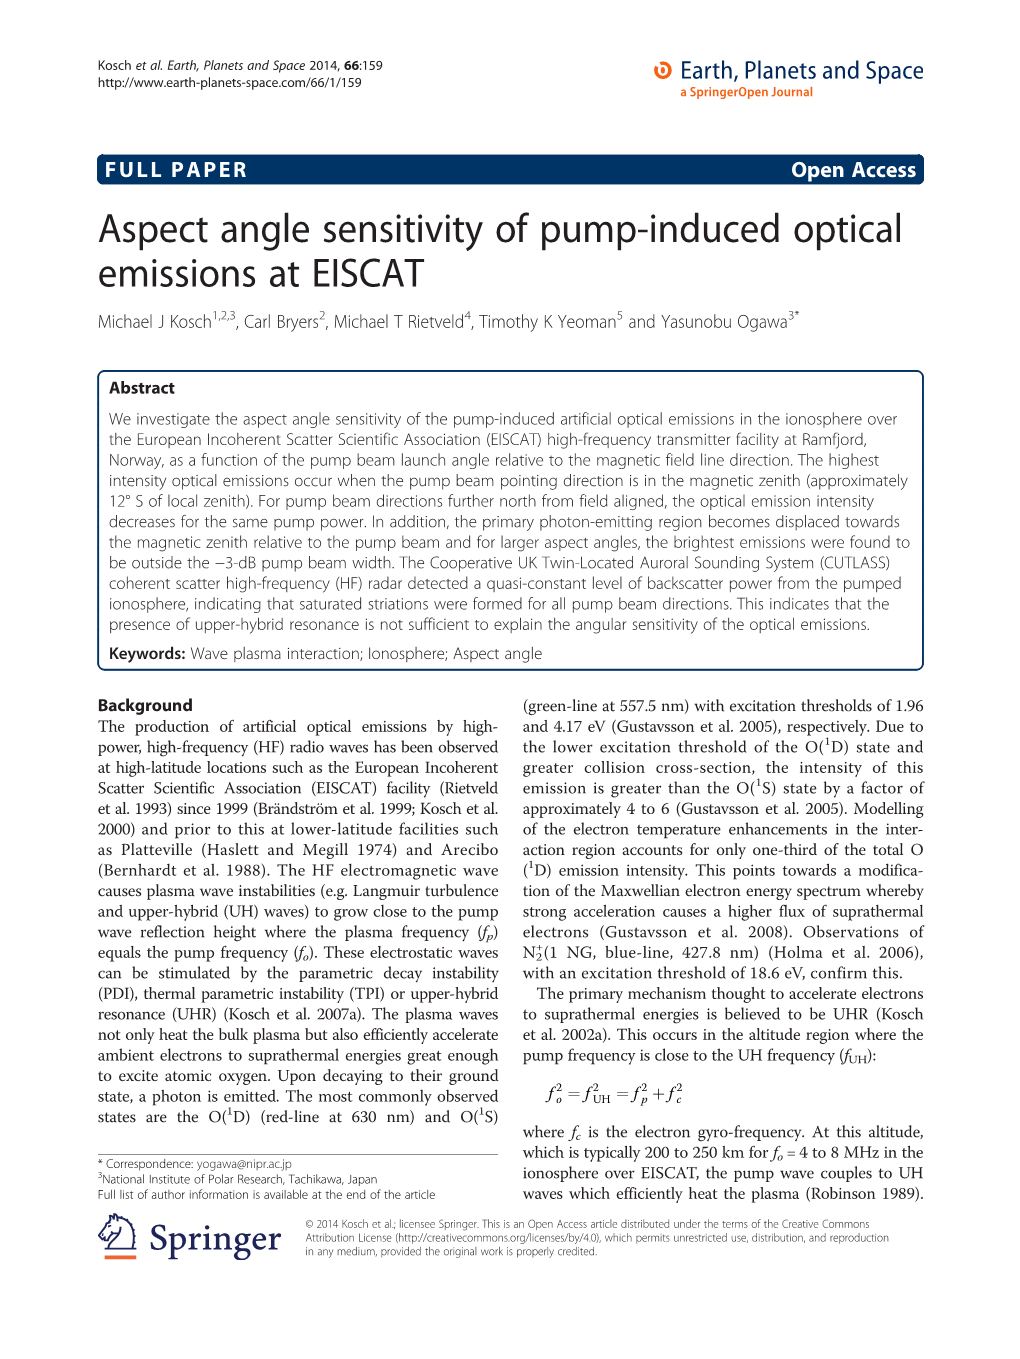 Aspect Angle Sensitivity of Pump-Induced Optical Emissions at EISCAT Michael J Kosch1,2,3, Carl Bryers2, Michael T Rietveld4, Timothy K Yeoman5 and Yasunobu Ogawa3*